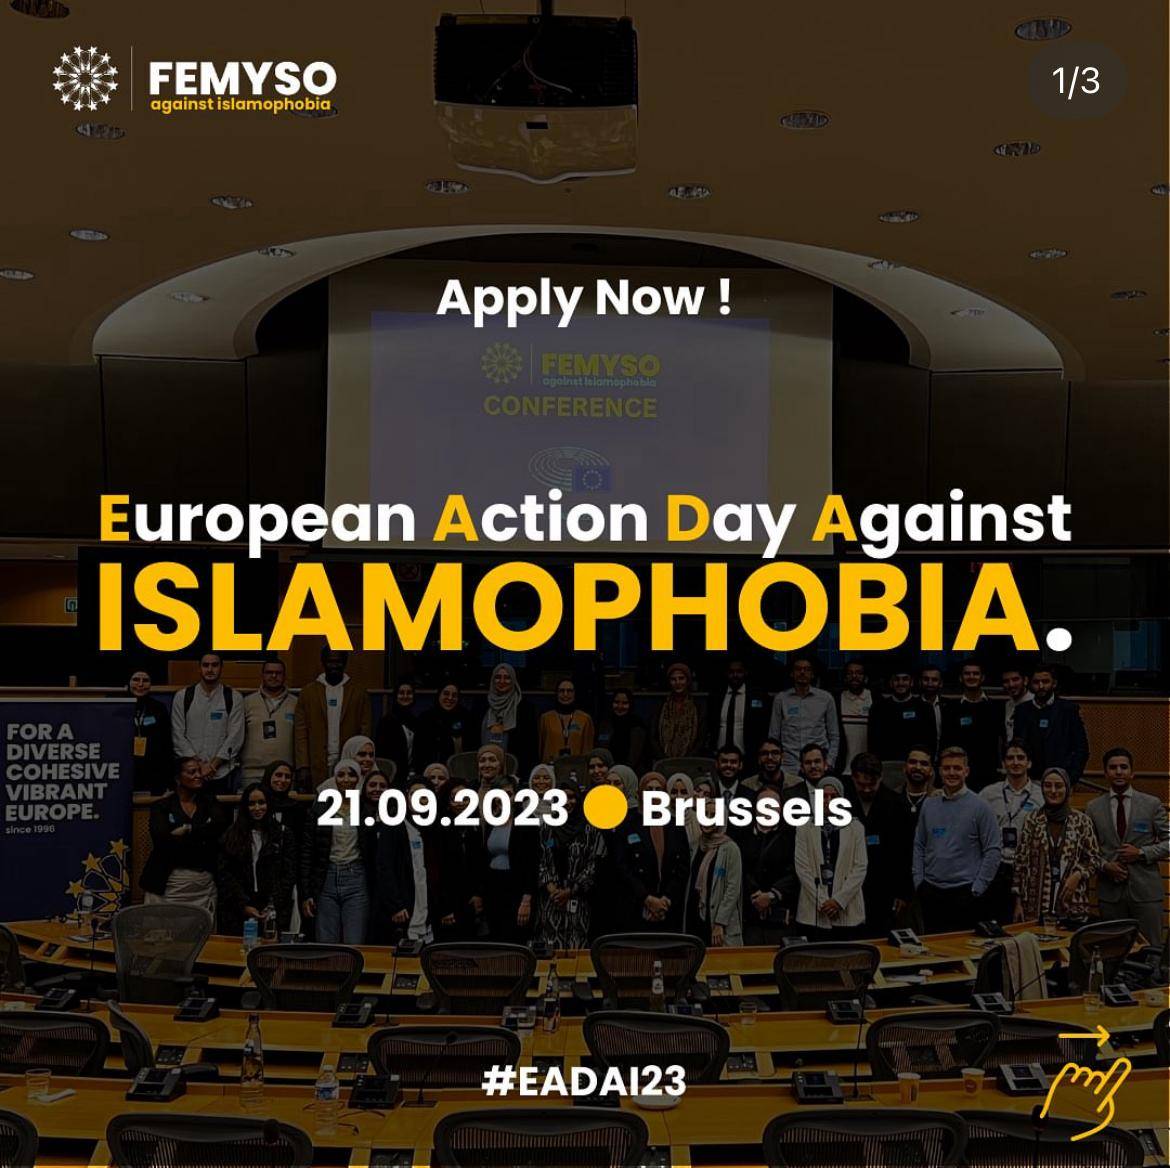 Evento pro islam al Parlamento Ue. "Il Pd sta coi Fratelli musulmani?"